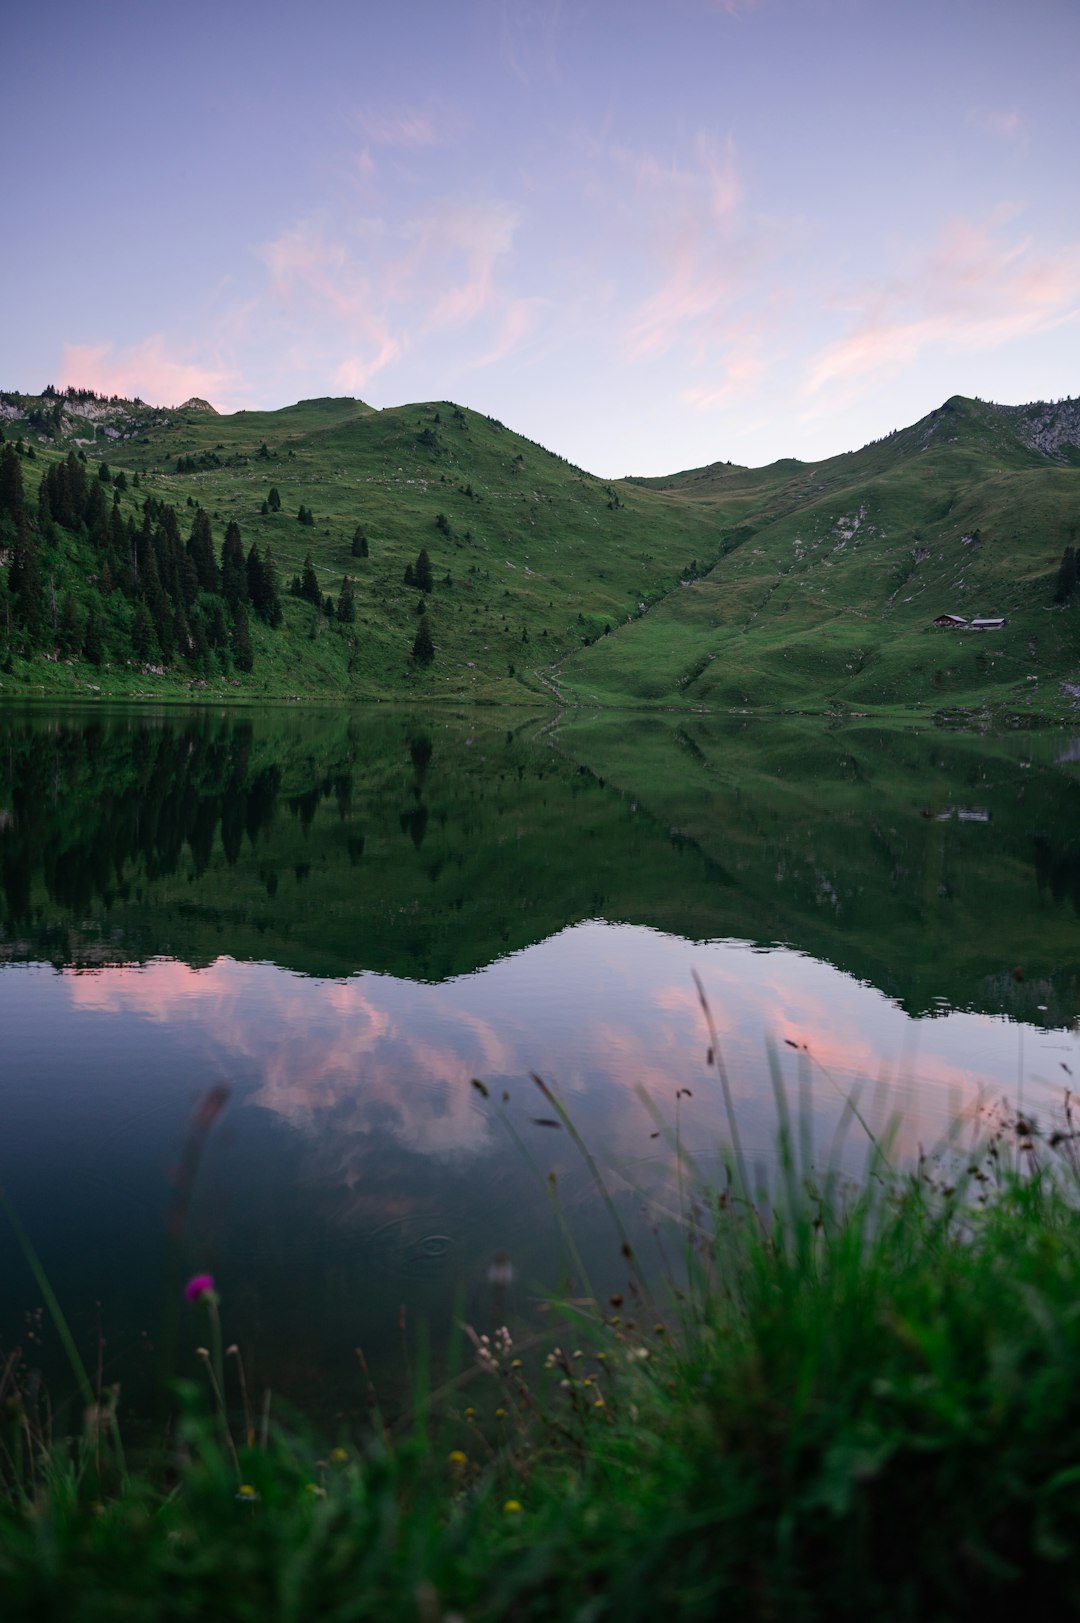 green mountains beside lake during daytime